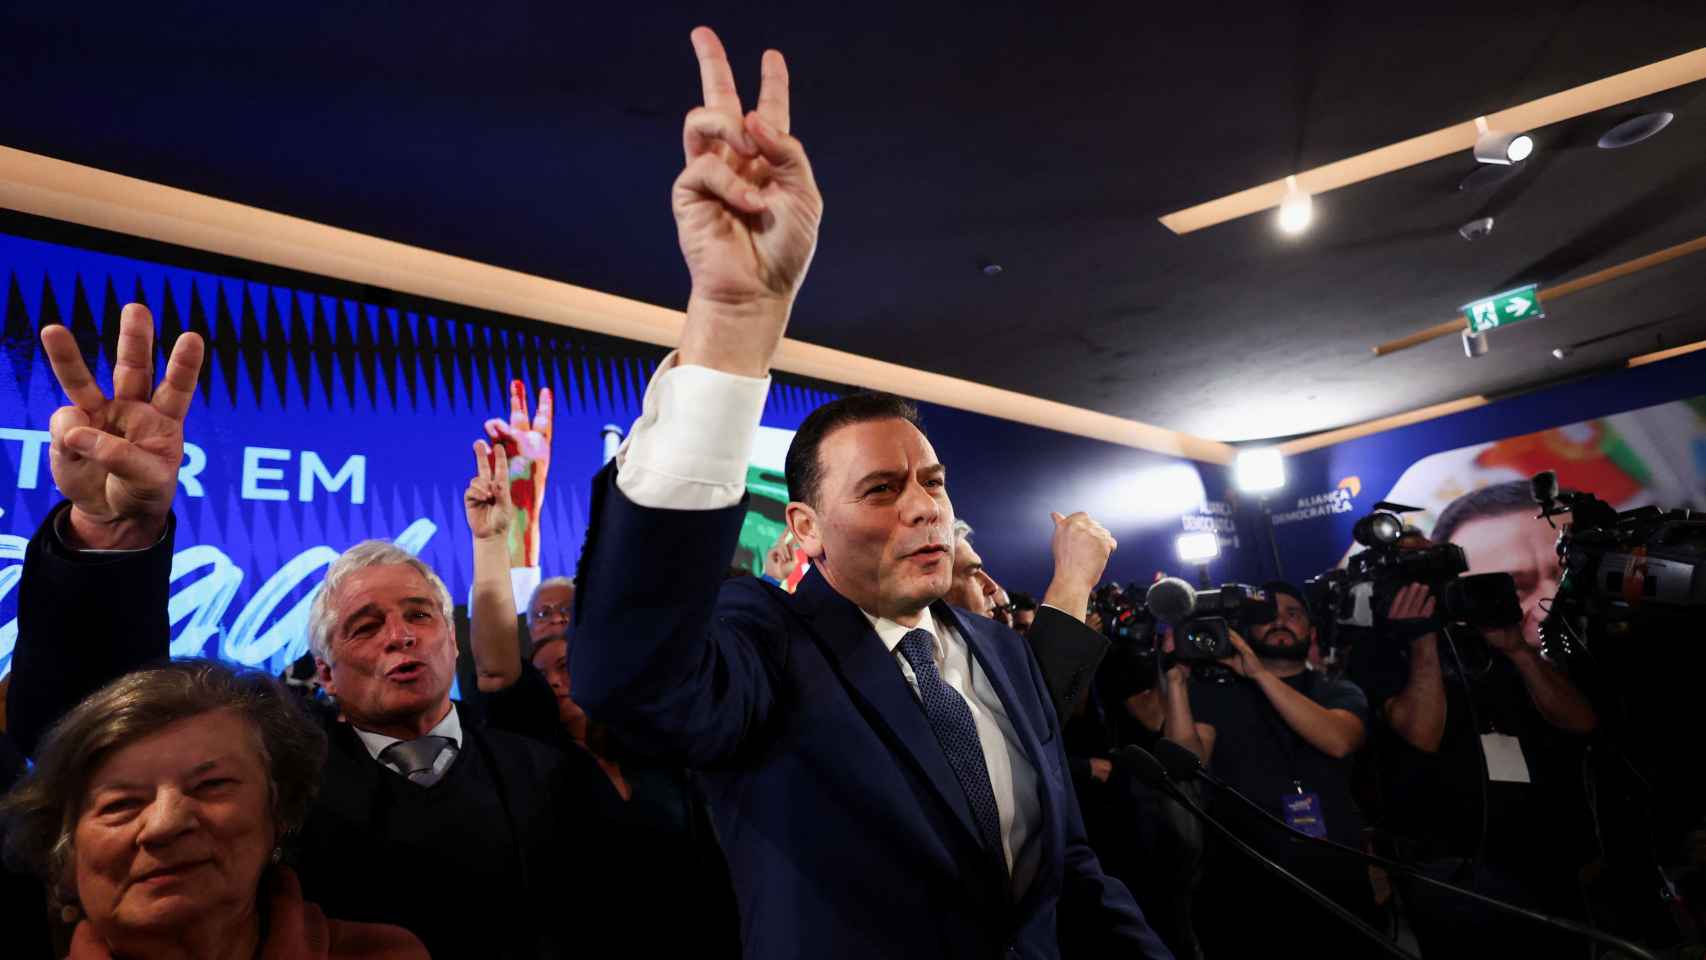 Centro-direita vence eleições em Portugal e extrema-direita obtém 18%: Montenegro governará